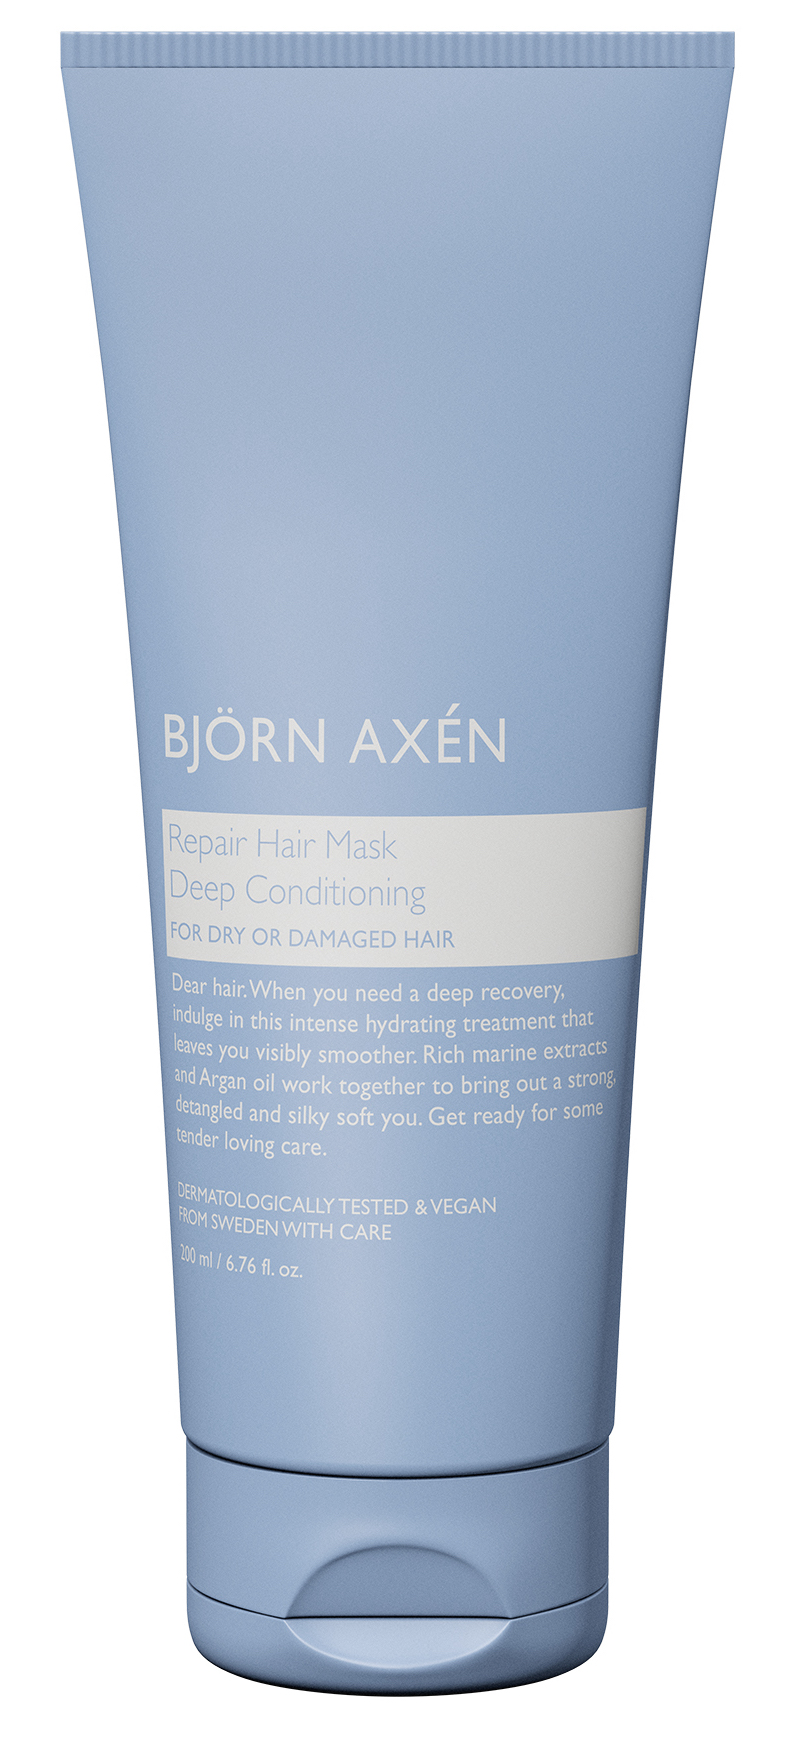 Björn Axén - Інтенсивна відновлююча маска для волосся Deep Conditioning Repair Hair Mask - Зображення 1